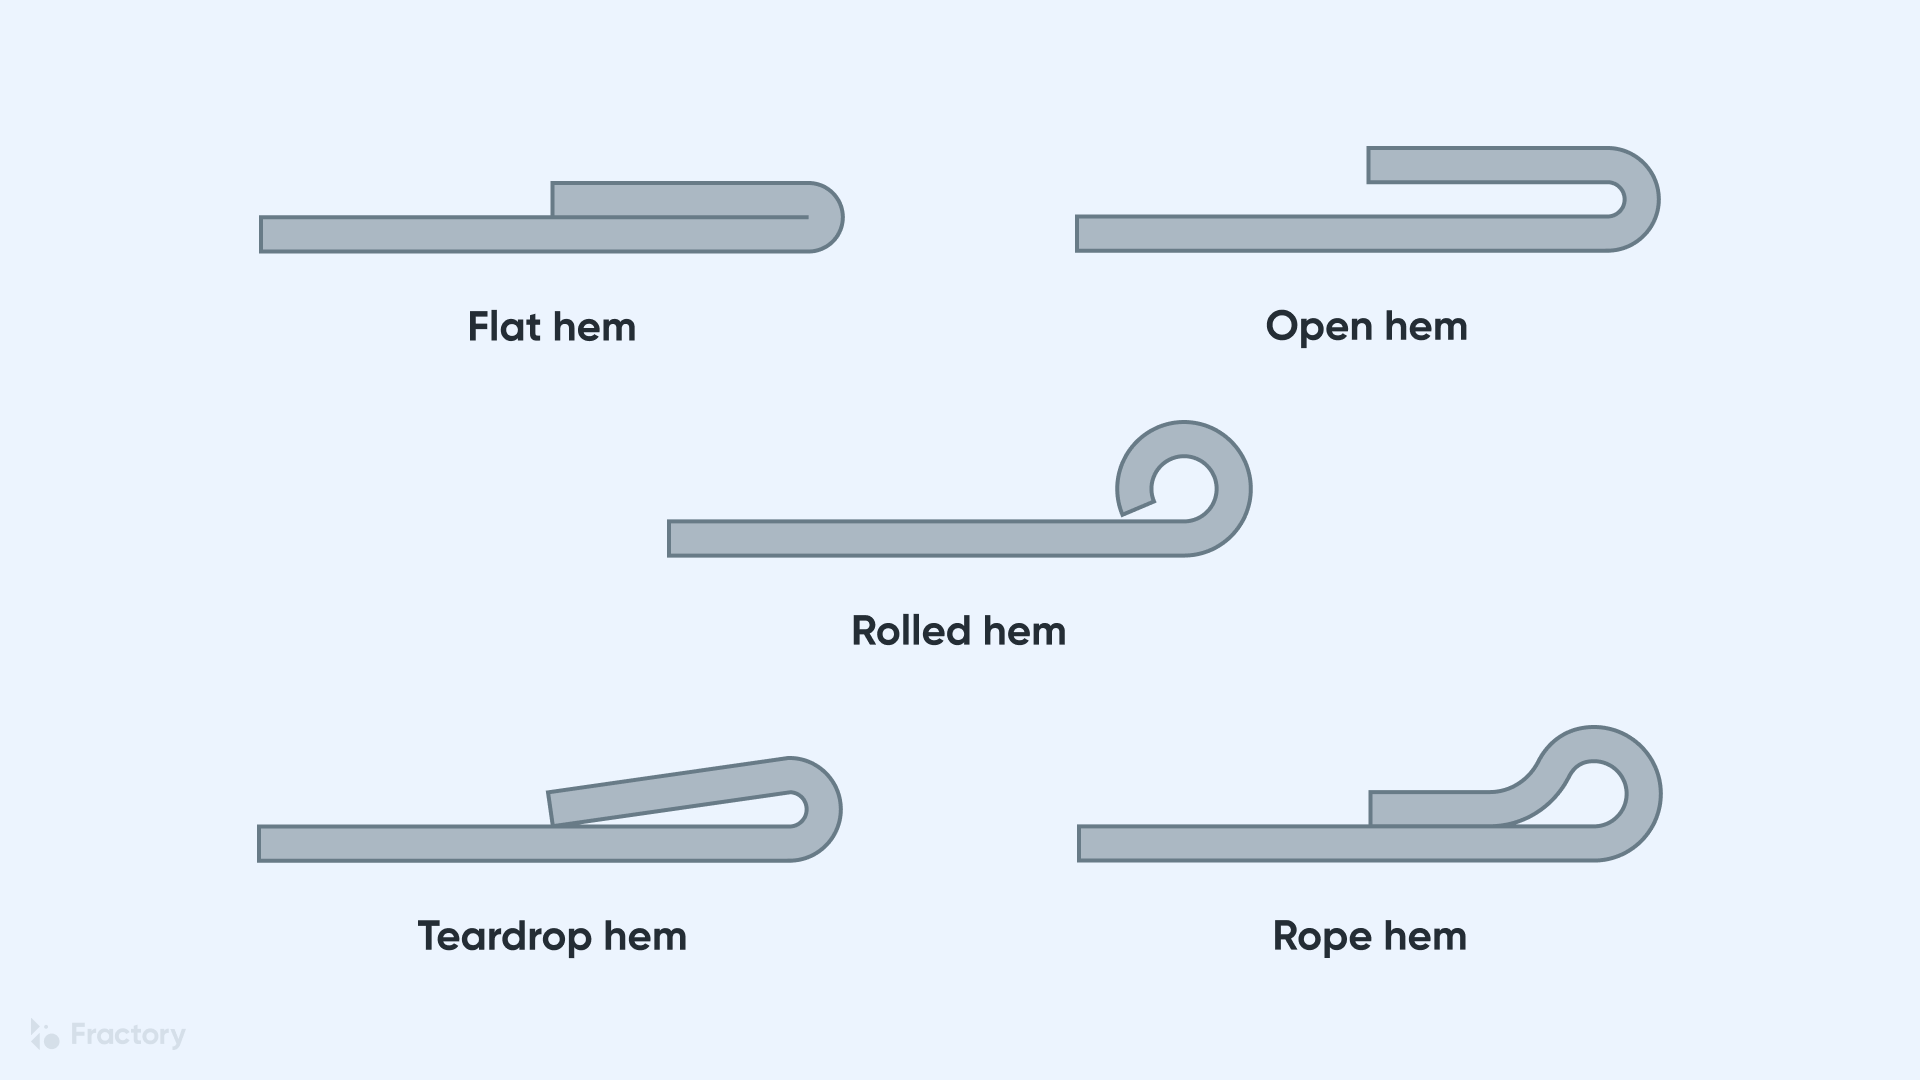 Sheet Metal Hemming, Hem Types & Processes Explained